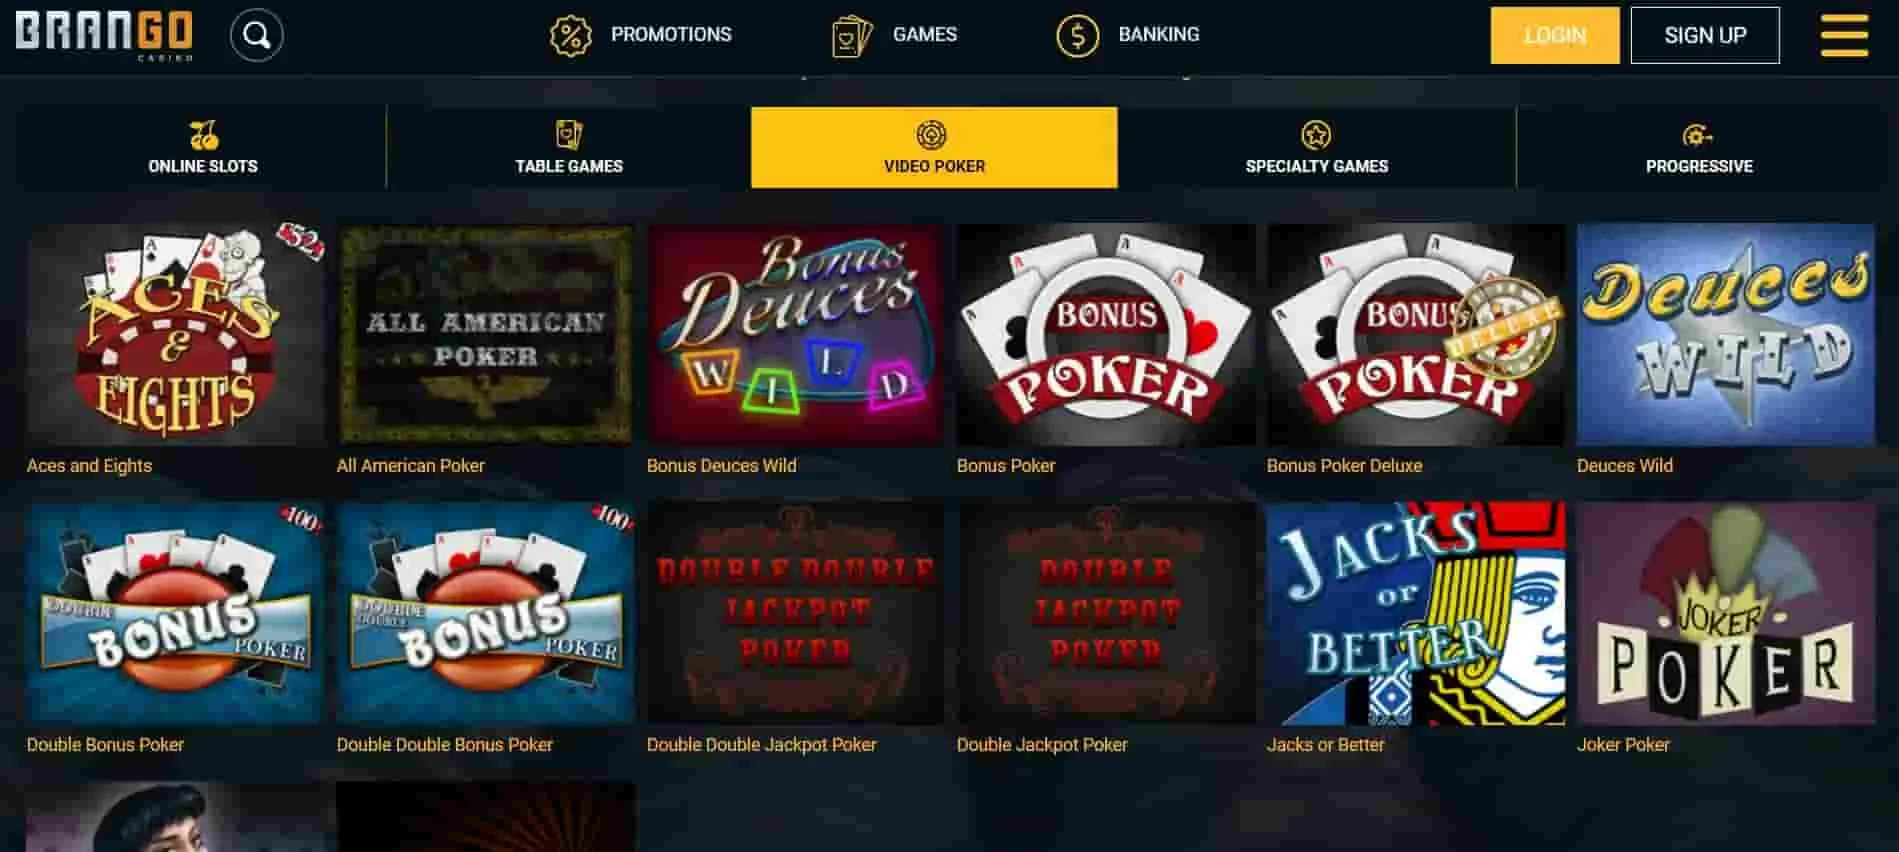 Casino brango video poker